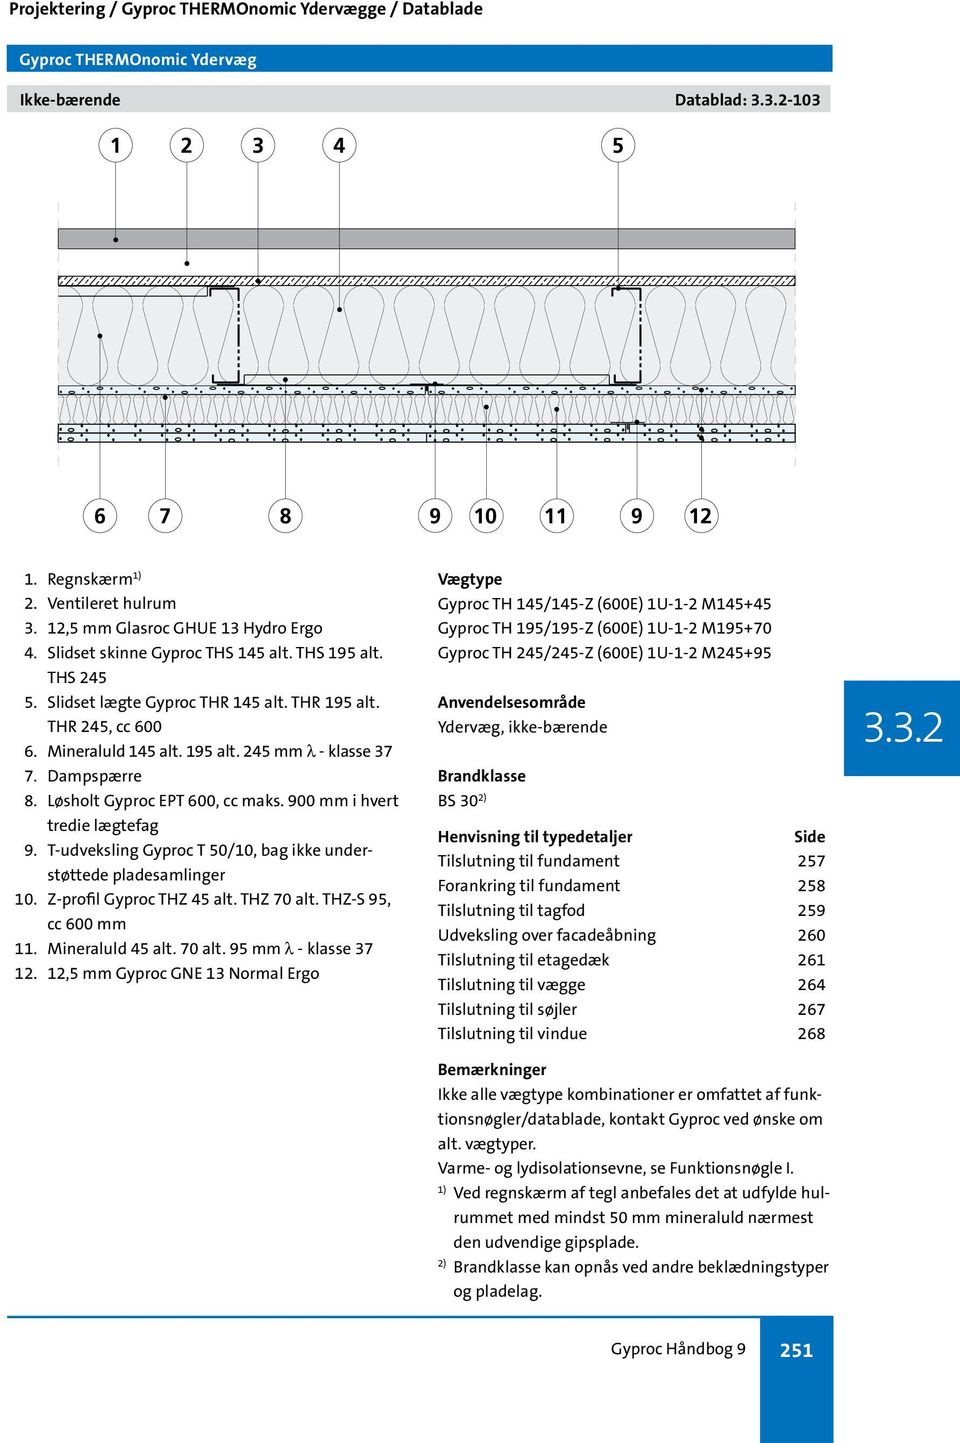 Gyproc Håndbog 9. Projektering / Gyproc THERMOnomic Ydervægge / Datablade  og Typedetaljer. Datablade og Typedetaljer - PDF Gratis download